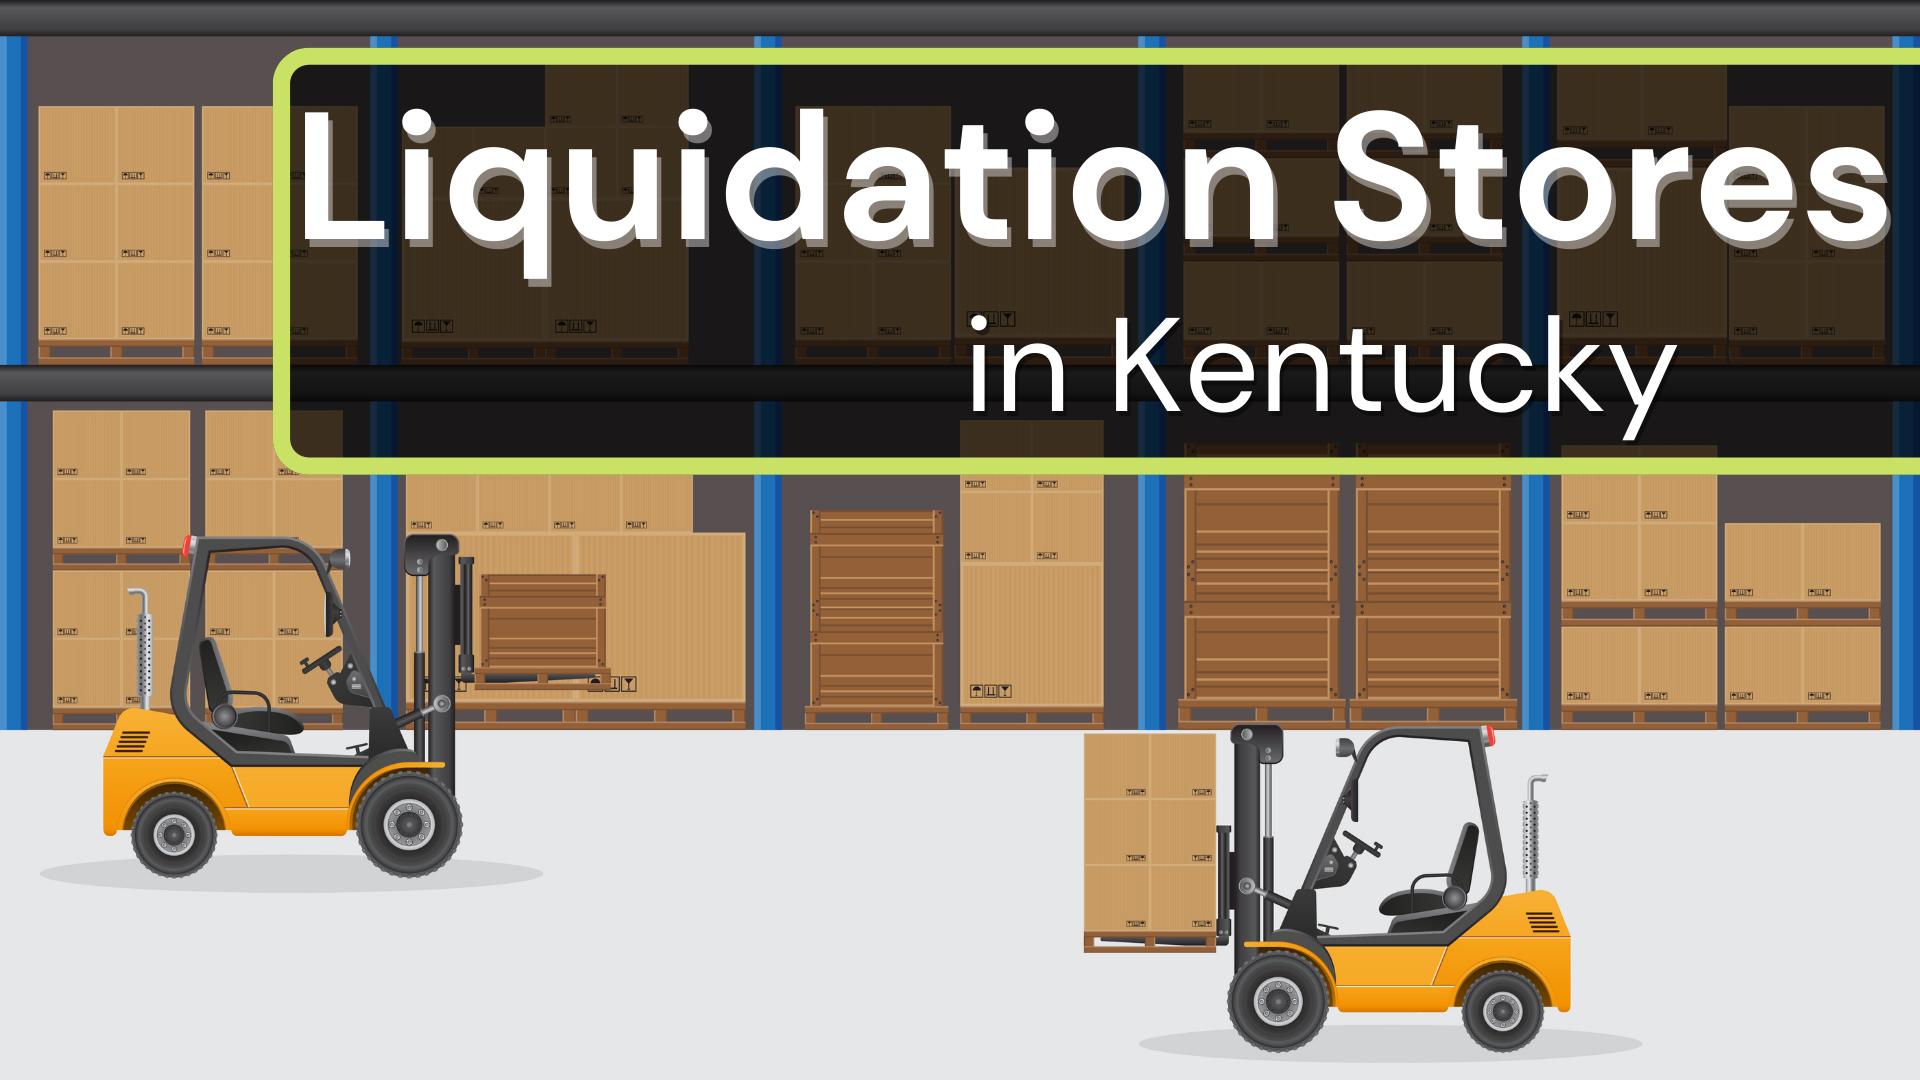 Liquidation Stores in Kentucky